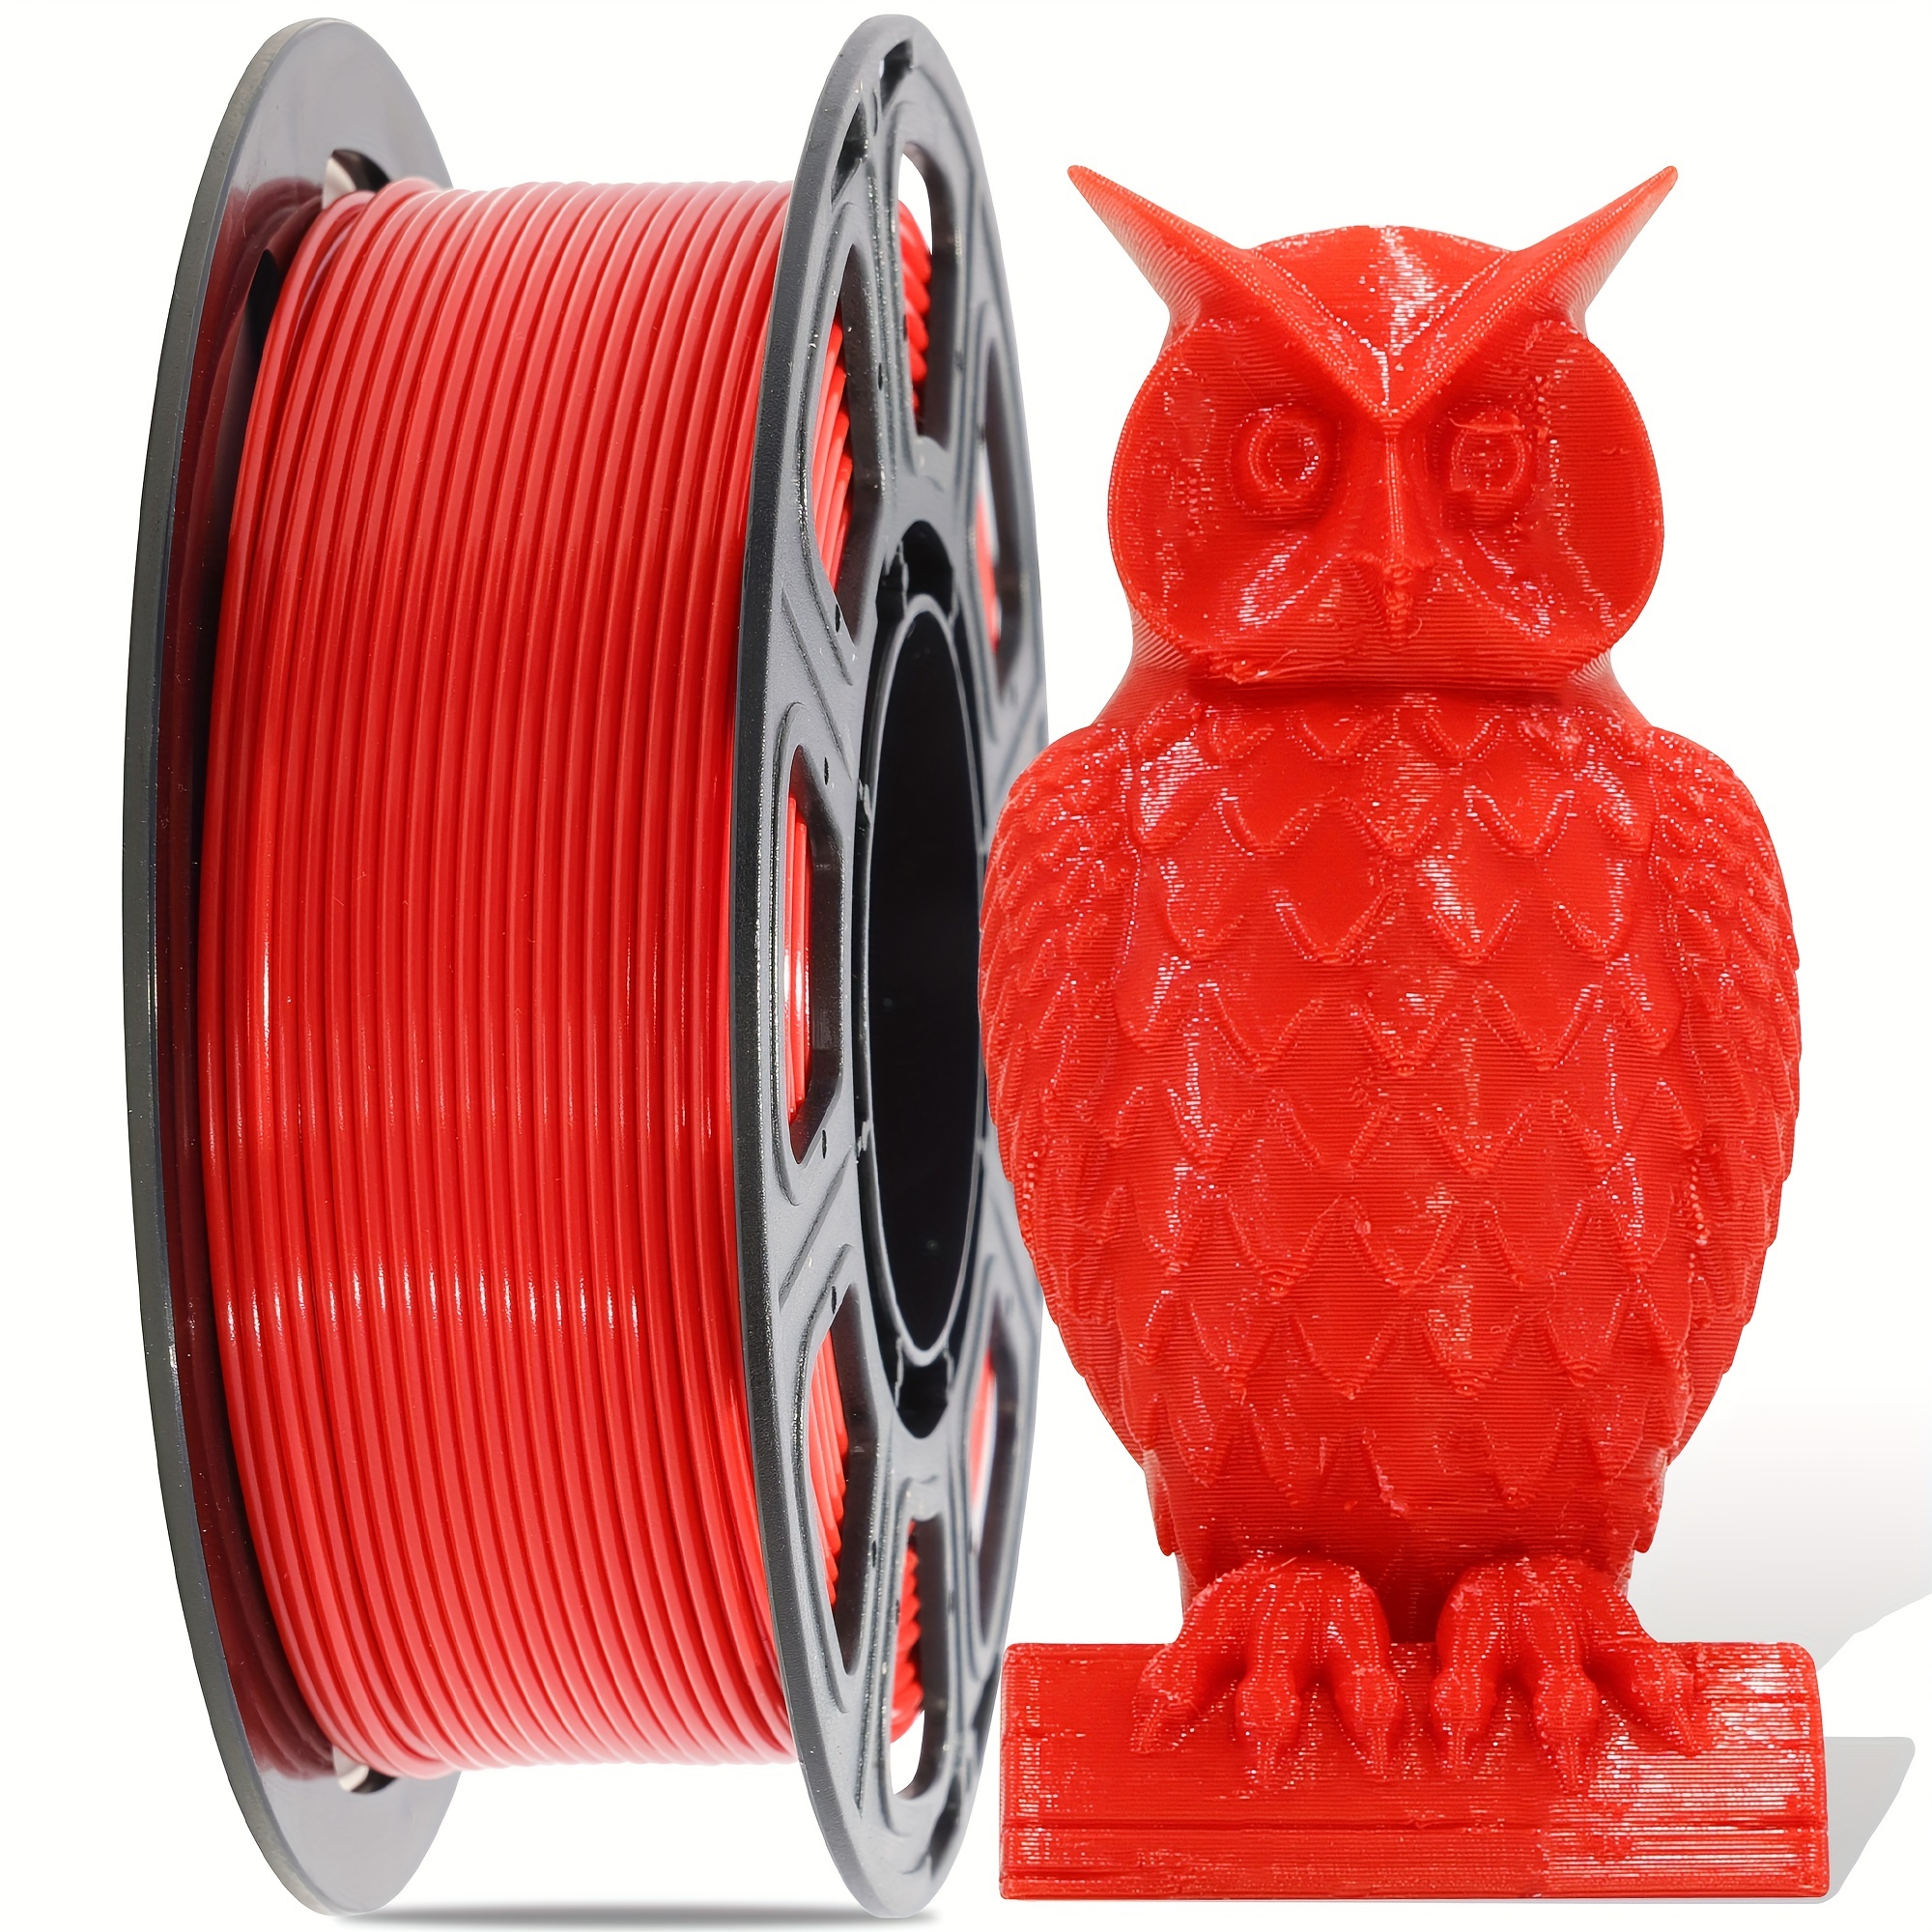 Creality Boîte sèche à filaments - Accessoires imprimante 3D